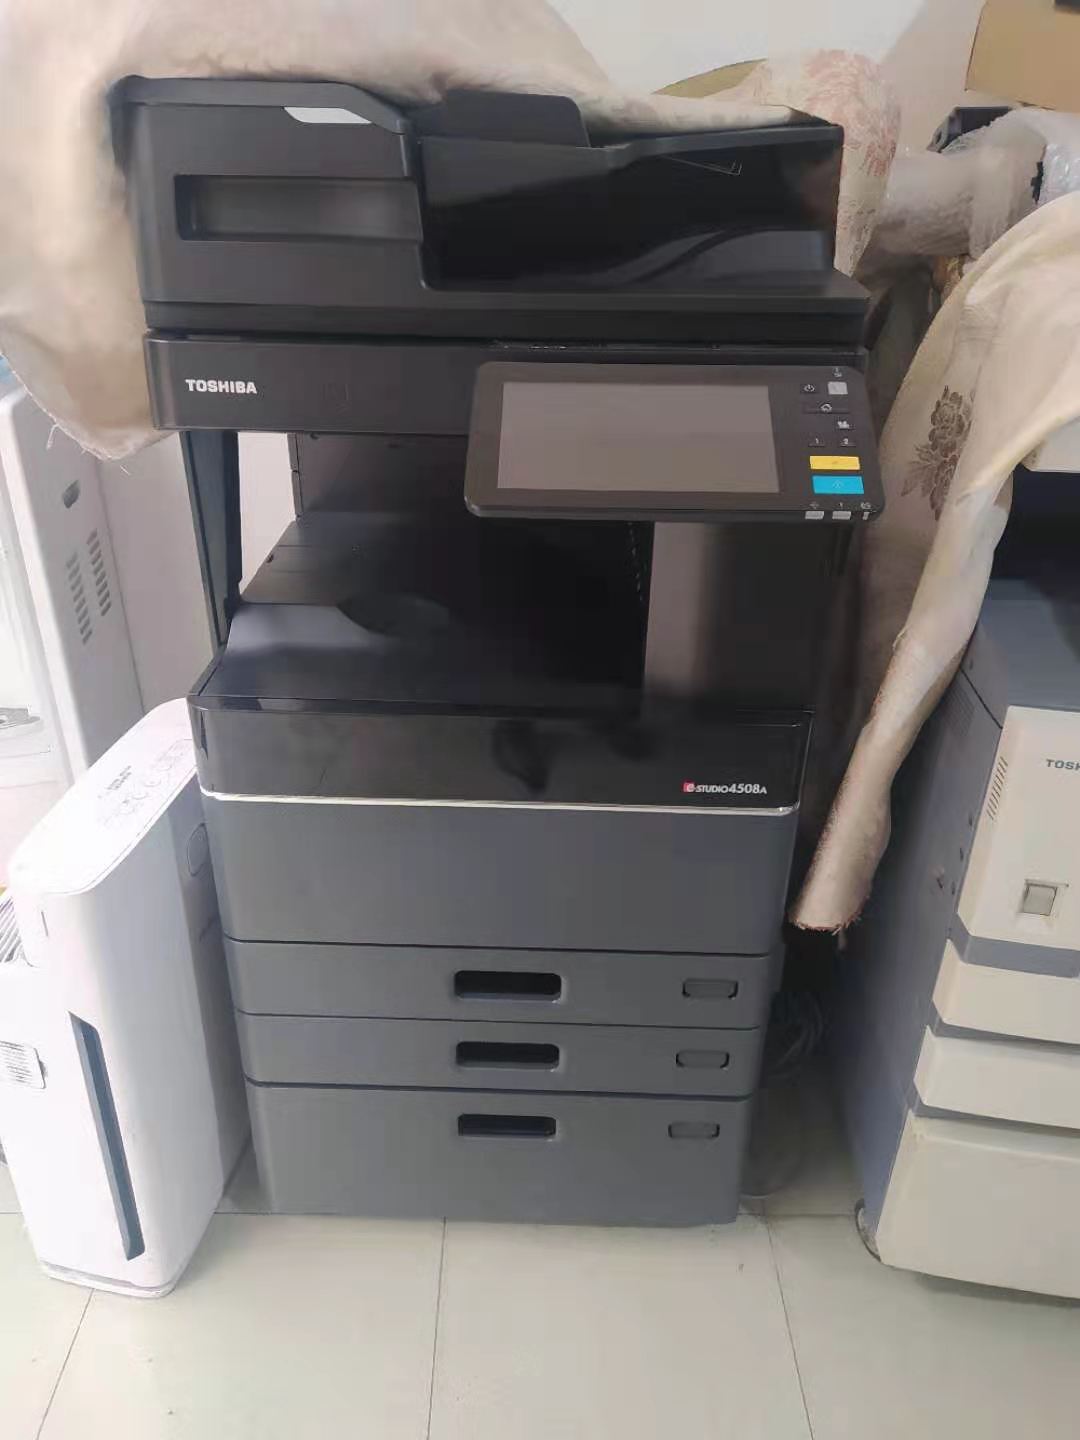 成都市区及周边办公用落地式大复印机出租激光打彩色扫描网络打印